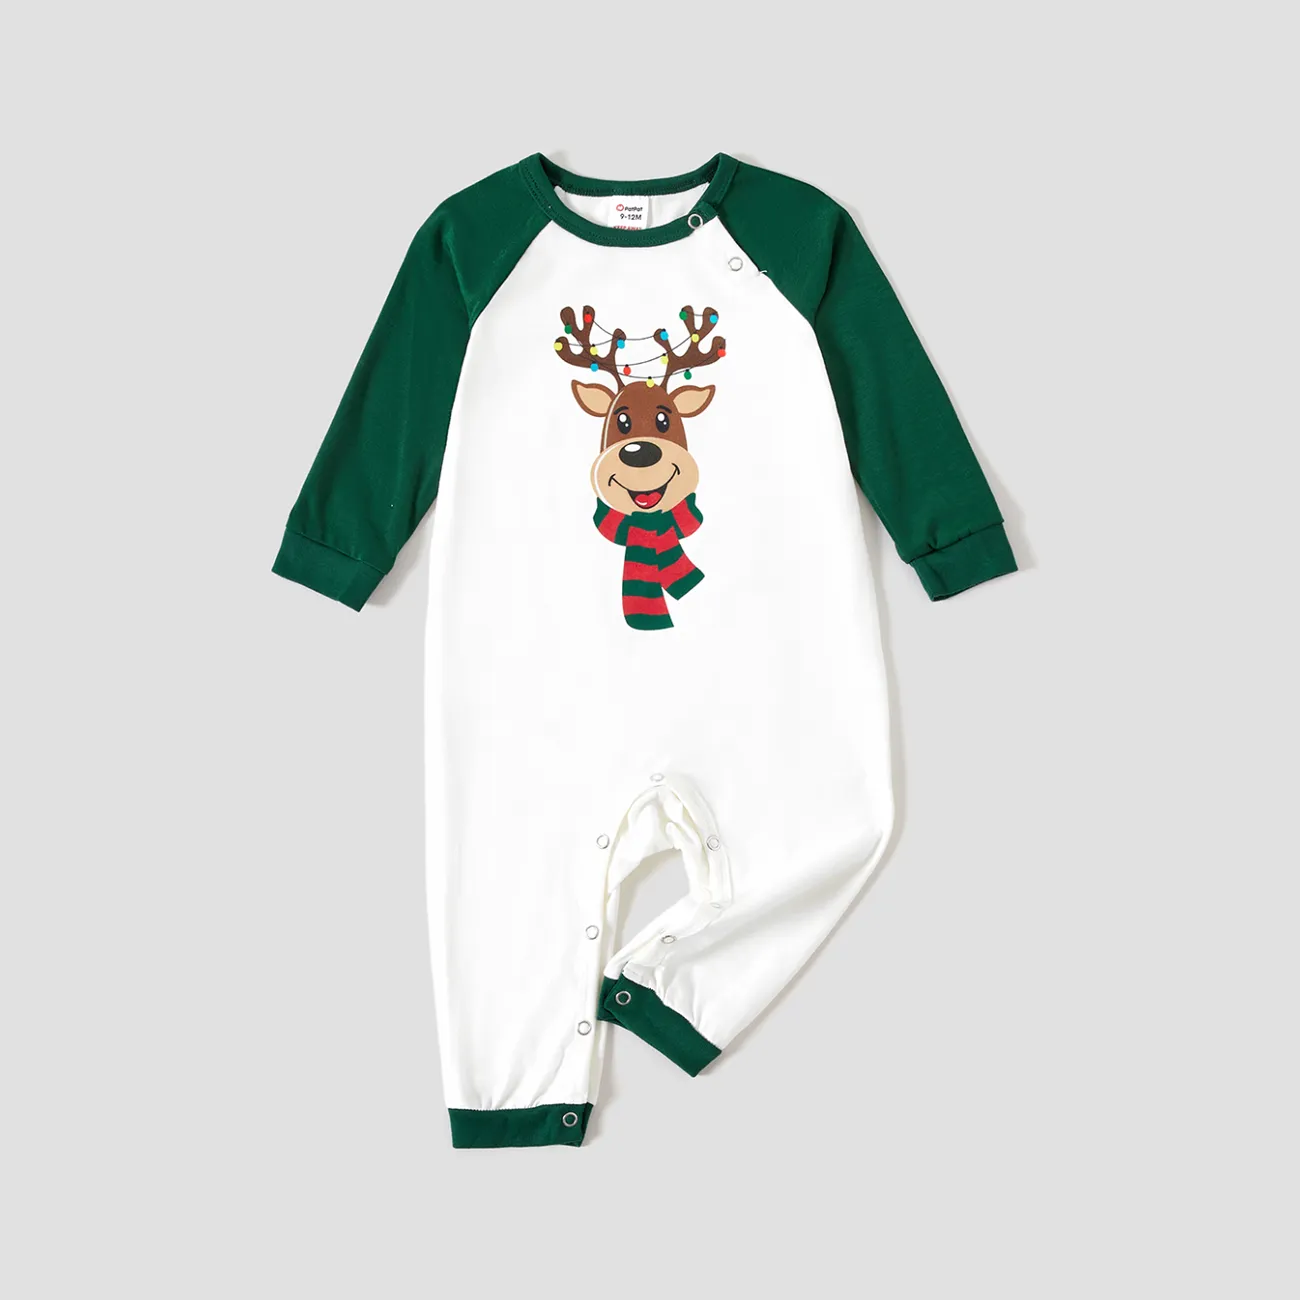 Christmas Family Matching Reindeer Print Long Sleeve Pajamas Sets (Flame resistant)  big image 1